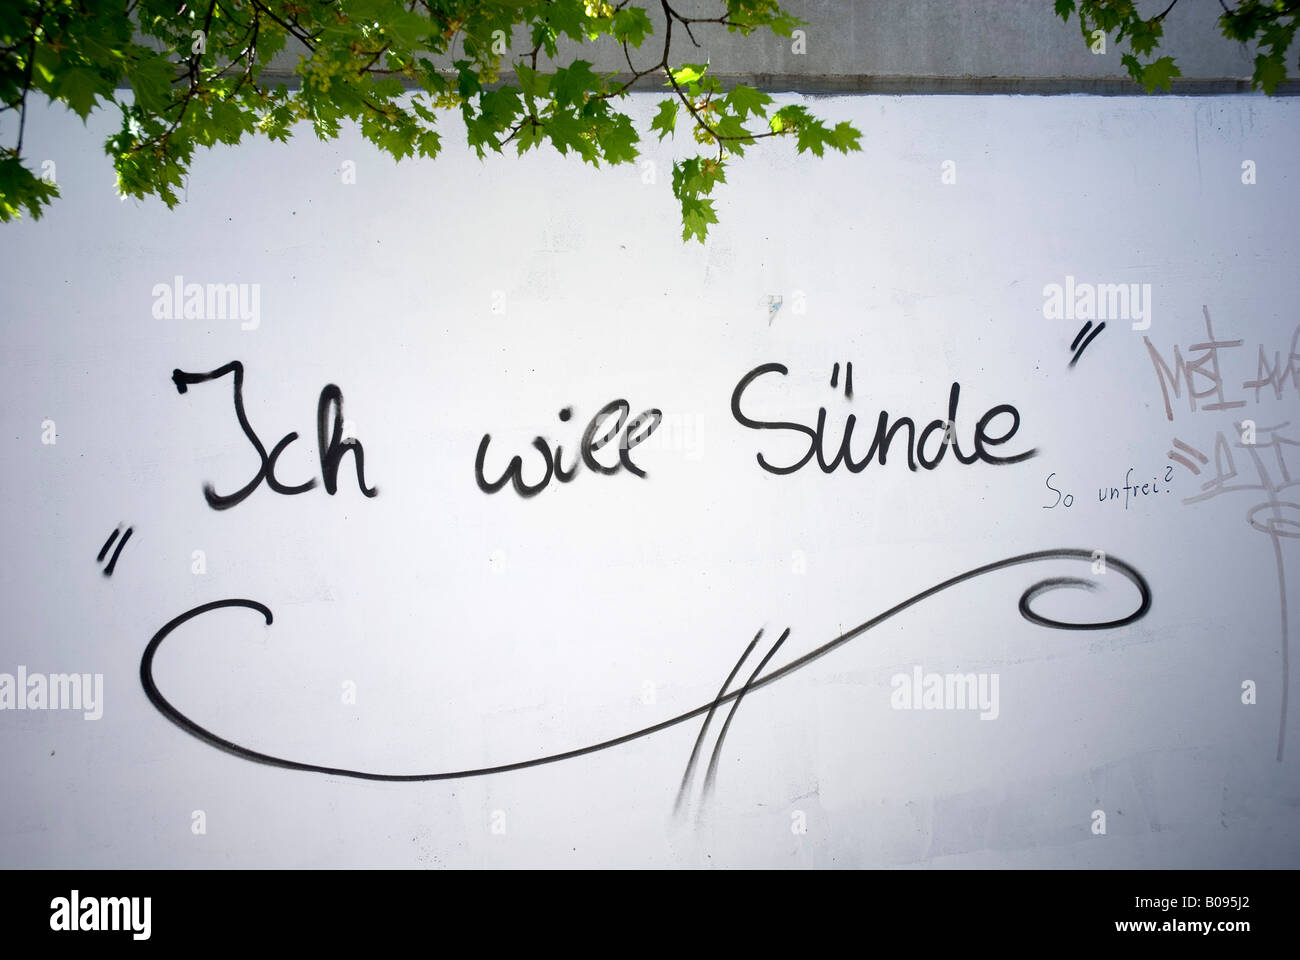 'Ich will Suende' (Quiero el pecado), pintadas en una pared blanca Foto de stock